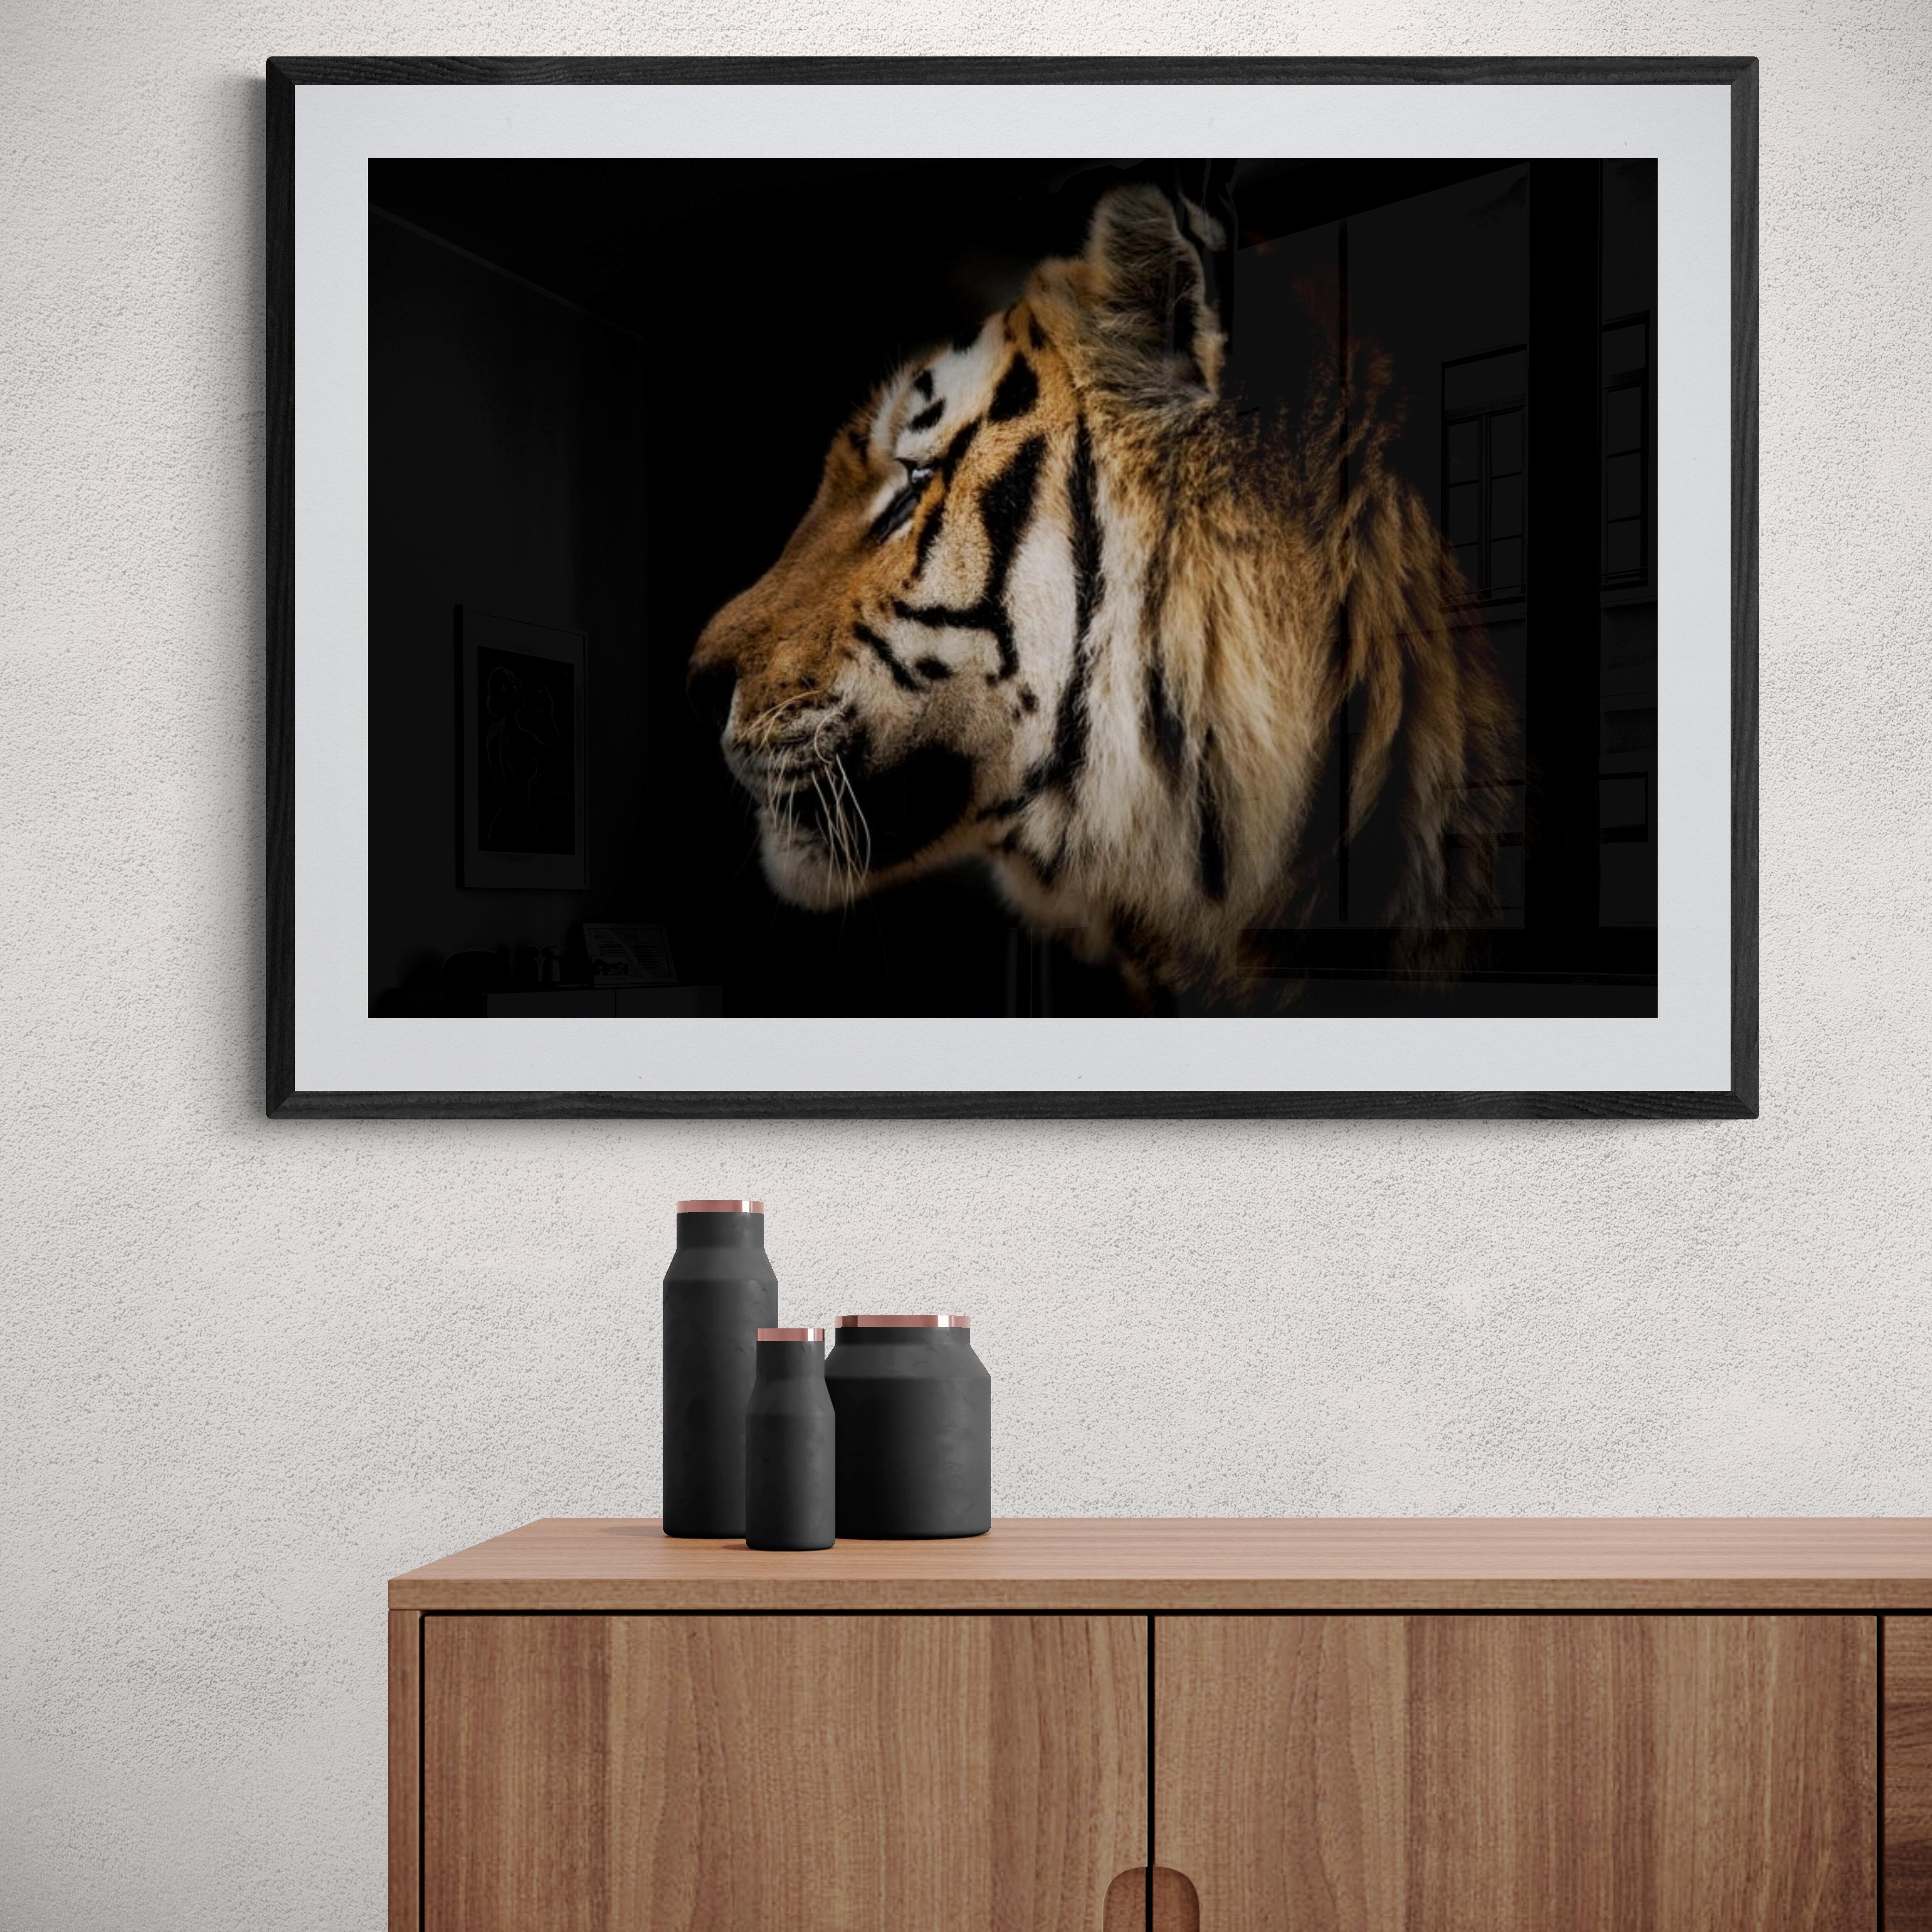 Dies ist eine zeitgenössische Fotografie eines Tigers von Shane Russeck. 
60x40 
Gedruckt auf Archivpapier mit Archivtinten
Druck ohne Vorzeichen 

Shane Russeck ist ein moderner Fotograf, Abenteurer und Entdecker. Er nahm zum ersten Mal eine Kamera